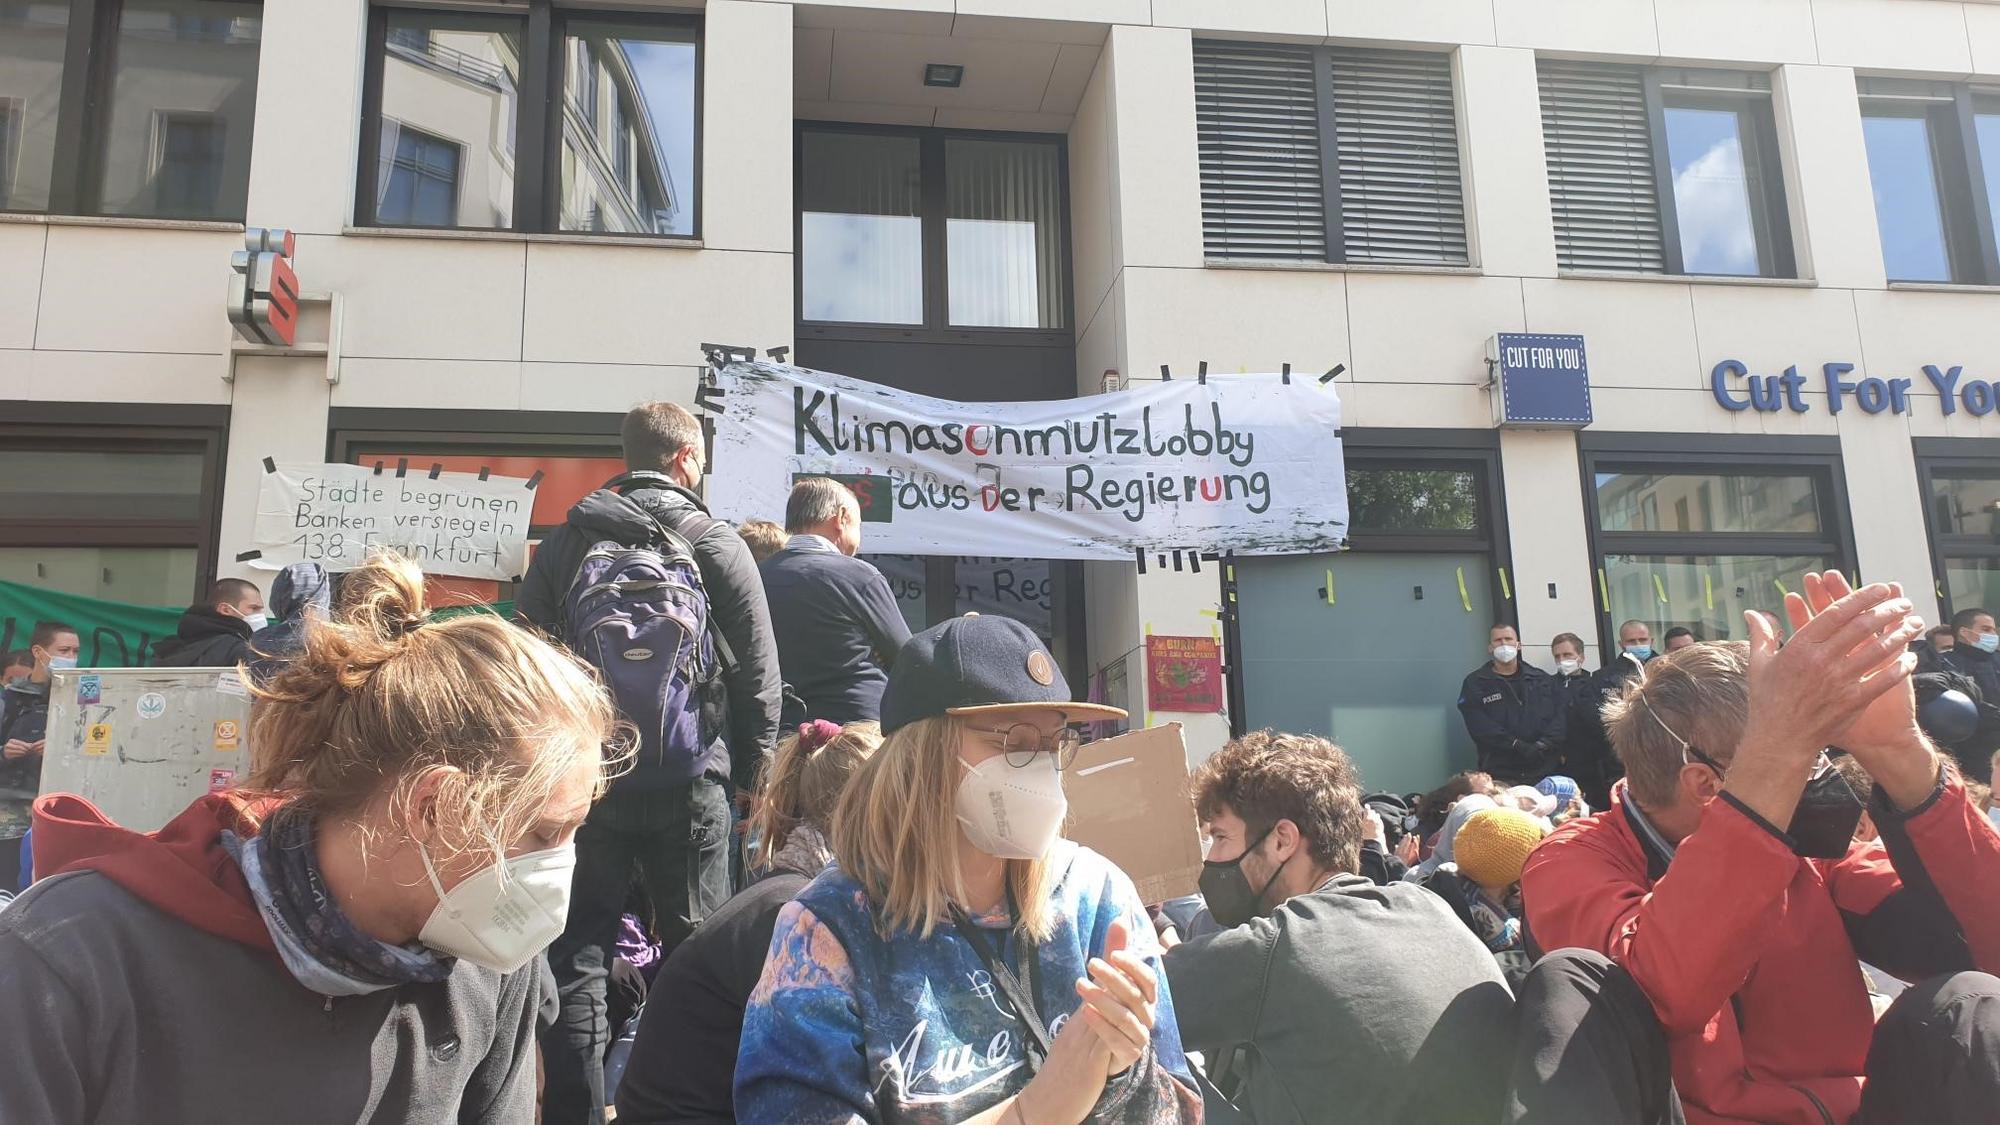 Protestierende am Wirtschaftsrat der CDU vor einem Banner mit der Aufschrift "Klimaschmutzlobby raus aus der Regierung"